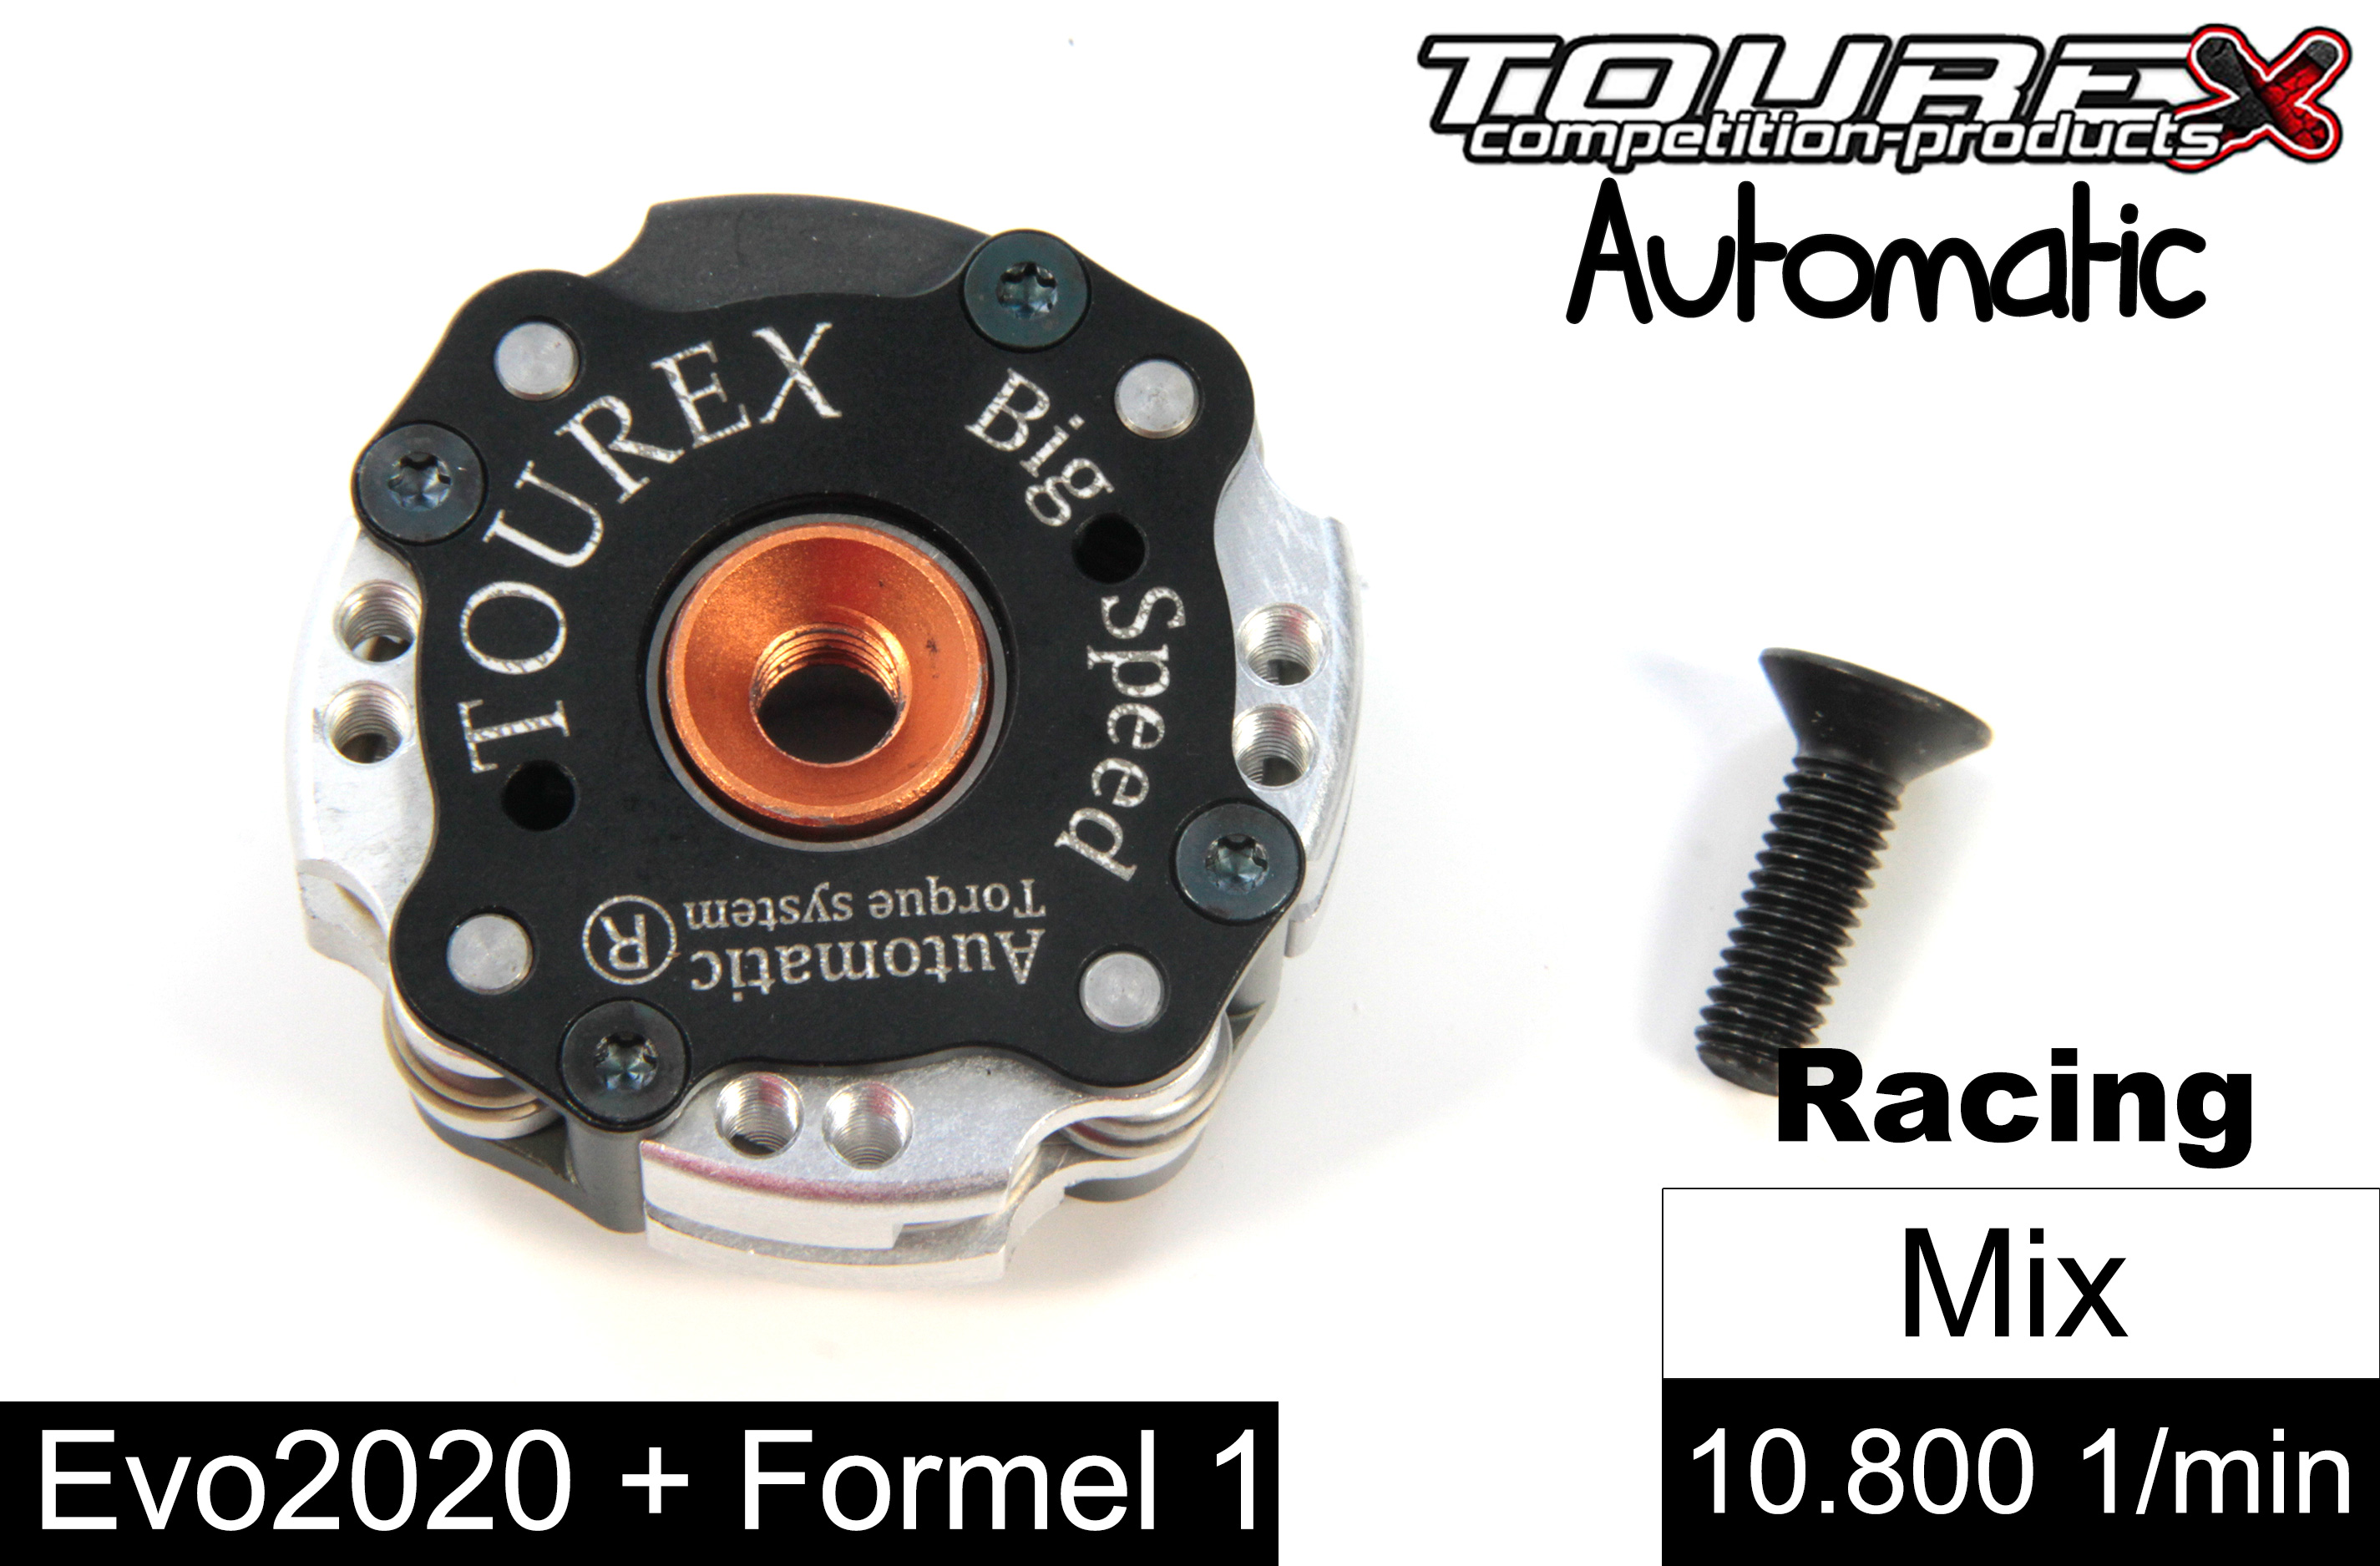 TXLA-910-F1-MIX Tourex Big-Speed Automatic für FG Formel 1 und Evo 2020